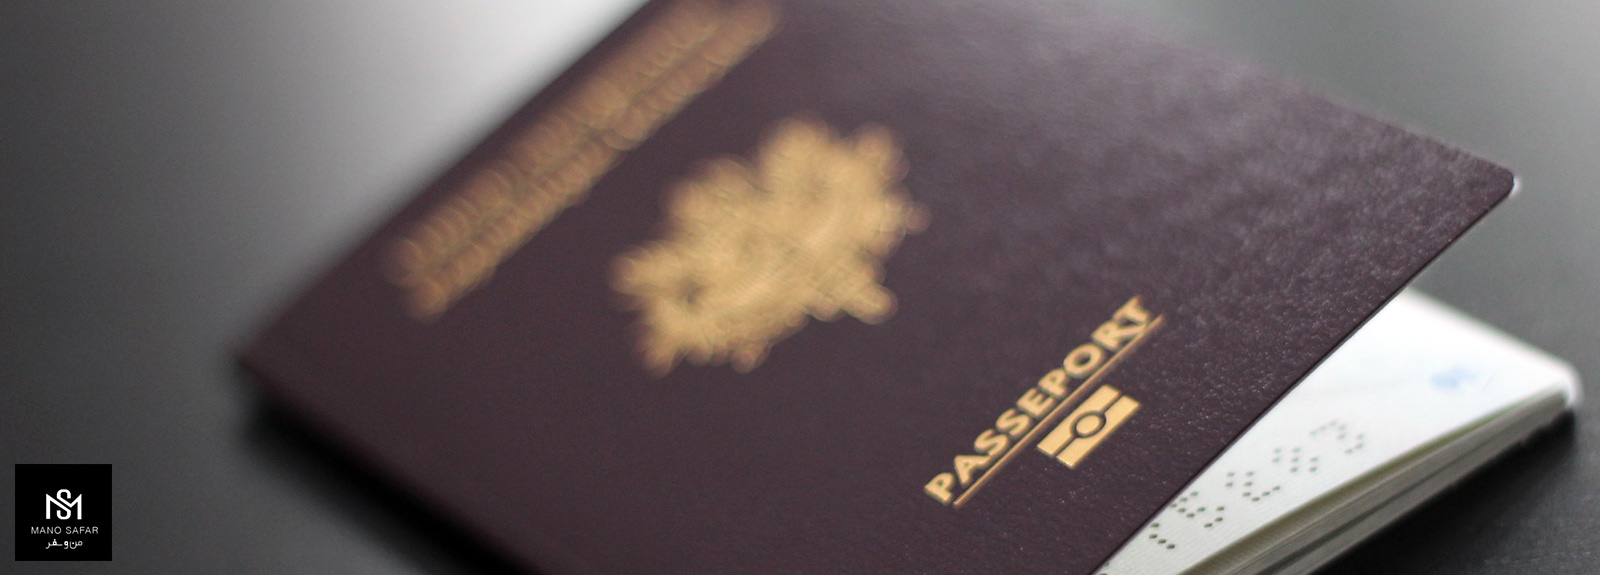 ویزای اقامت محدود چیست؟ (شرایط اخذ و قوانین) (Limited stay Visa)